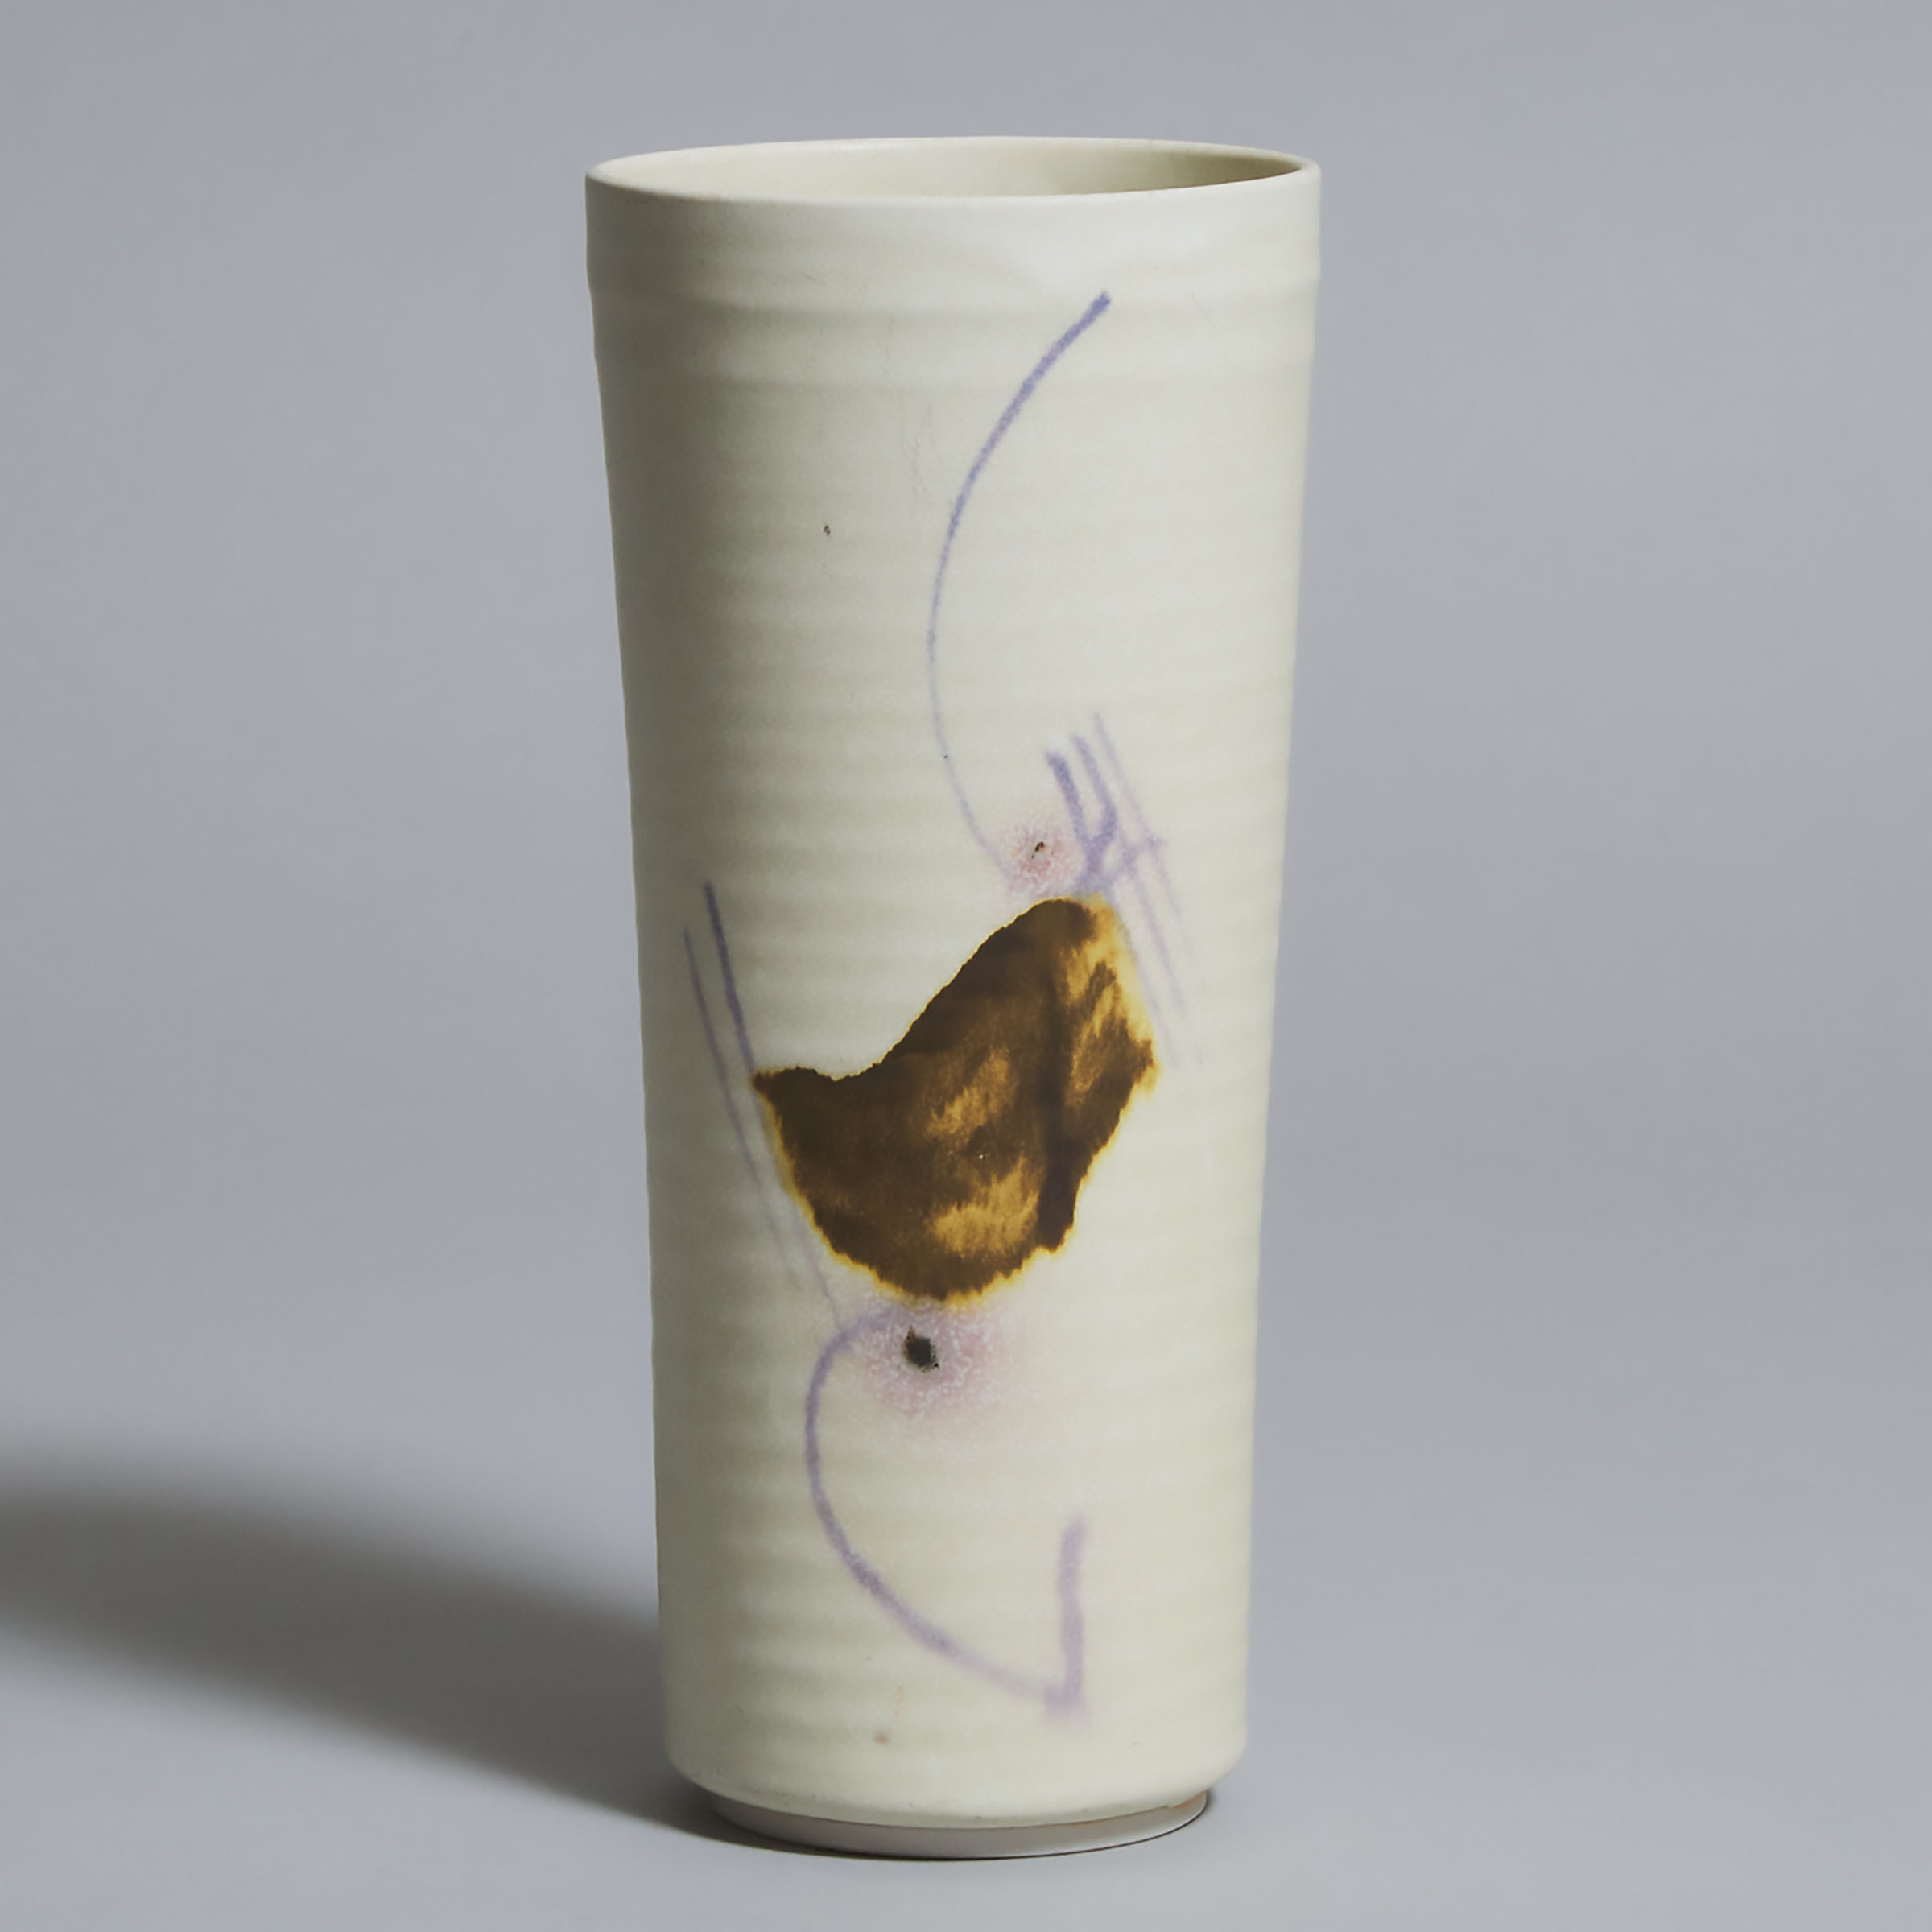 Kayo O'Young (Canadian, b.1950), Cylindrical Vase, 1982